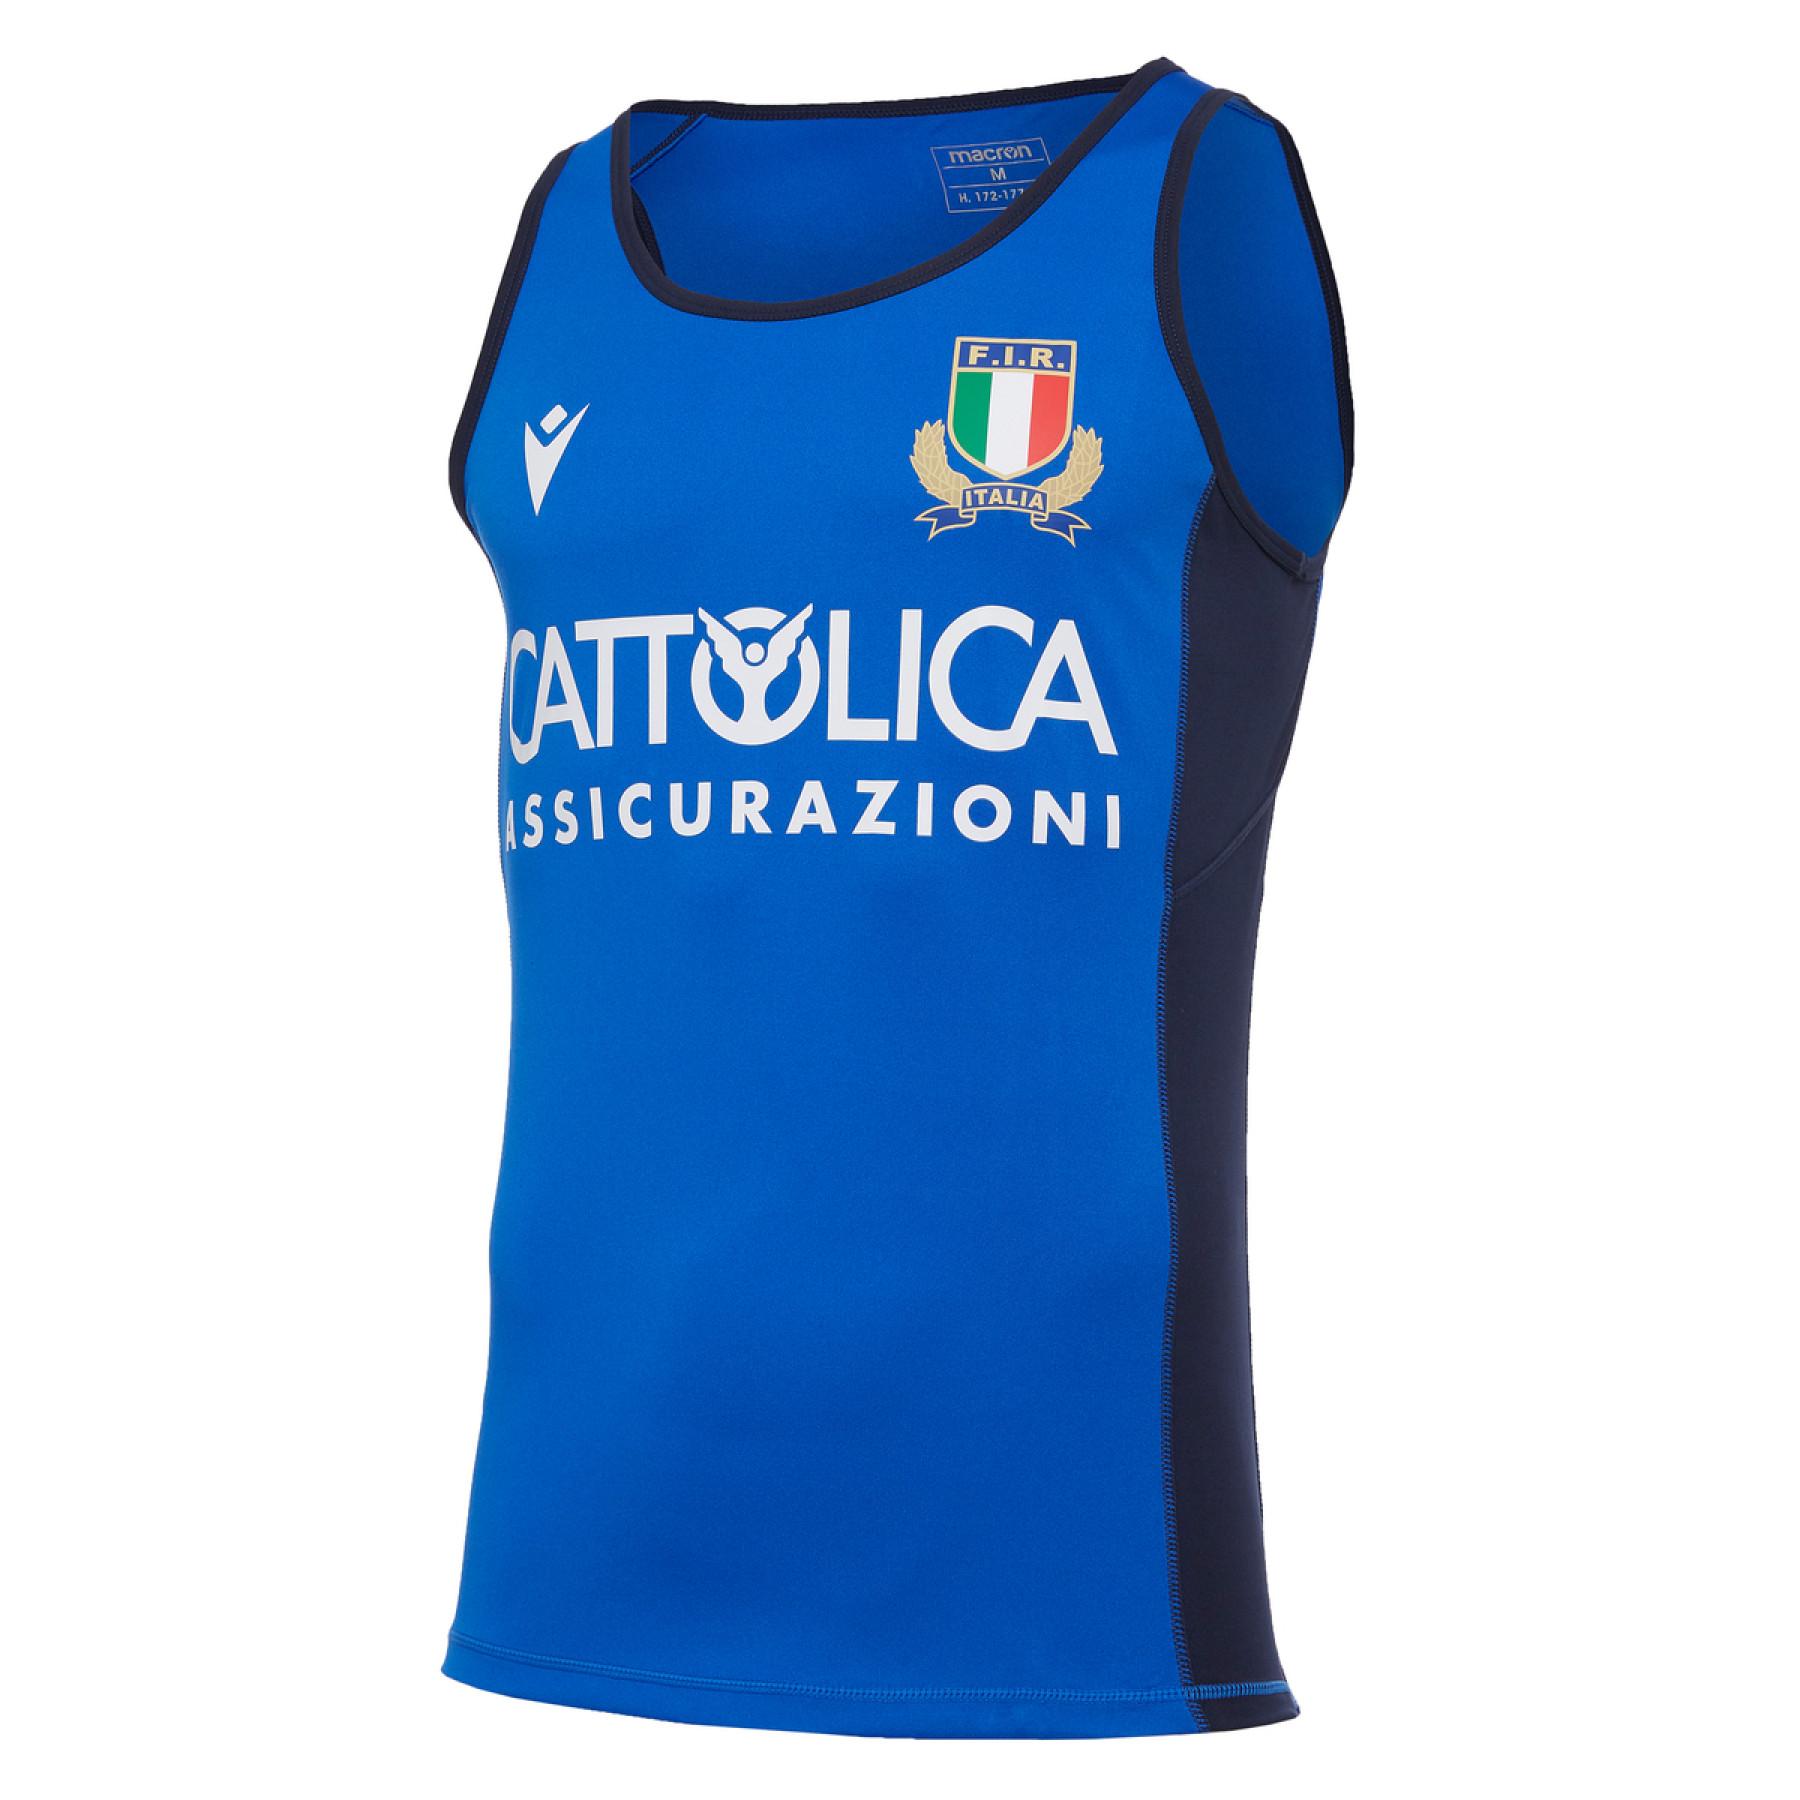 Maglia senza maniche Italie rugby 2020/21